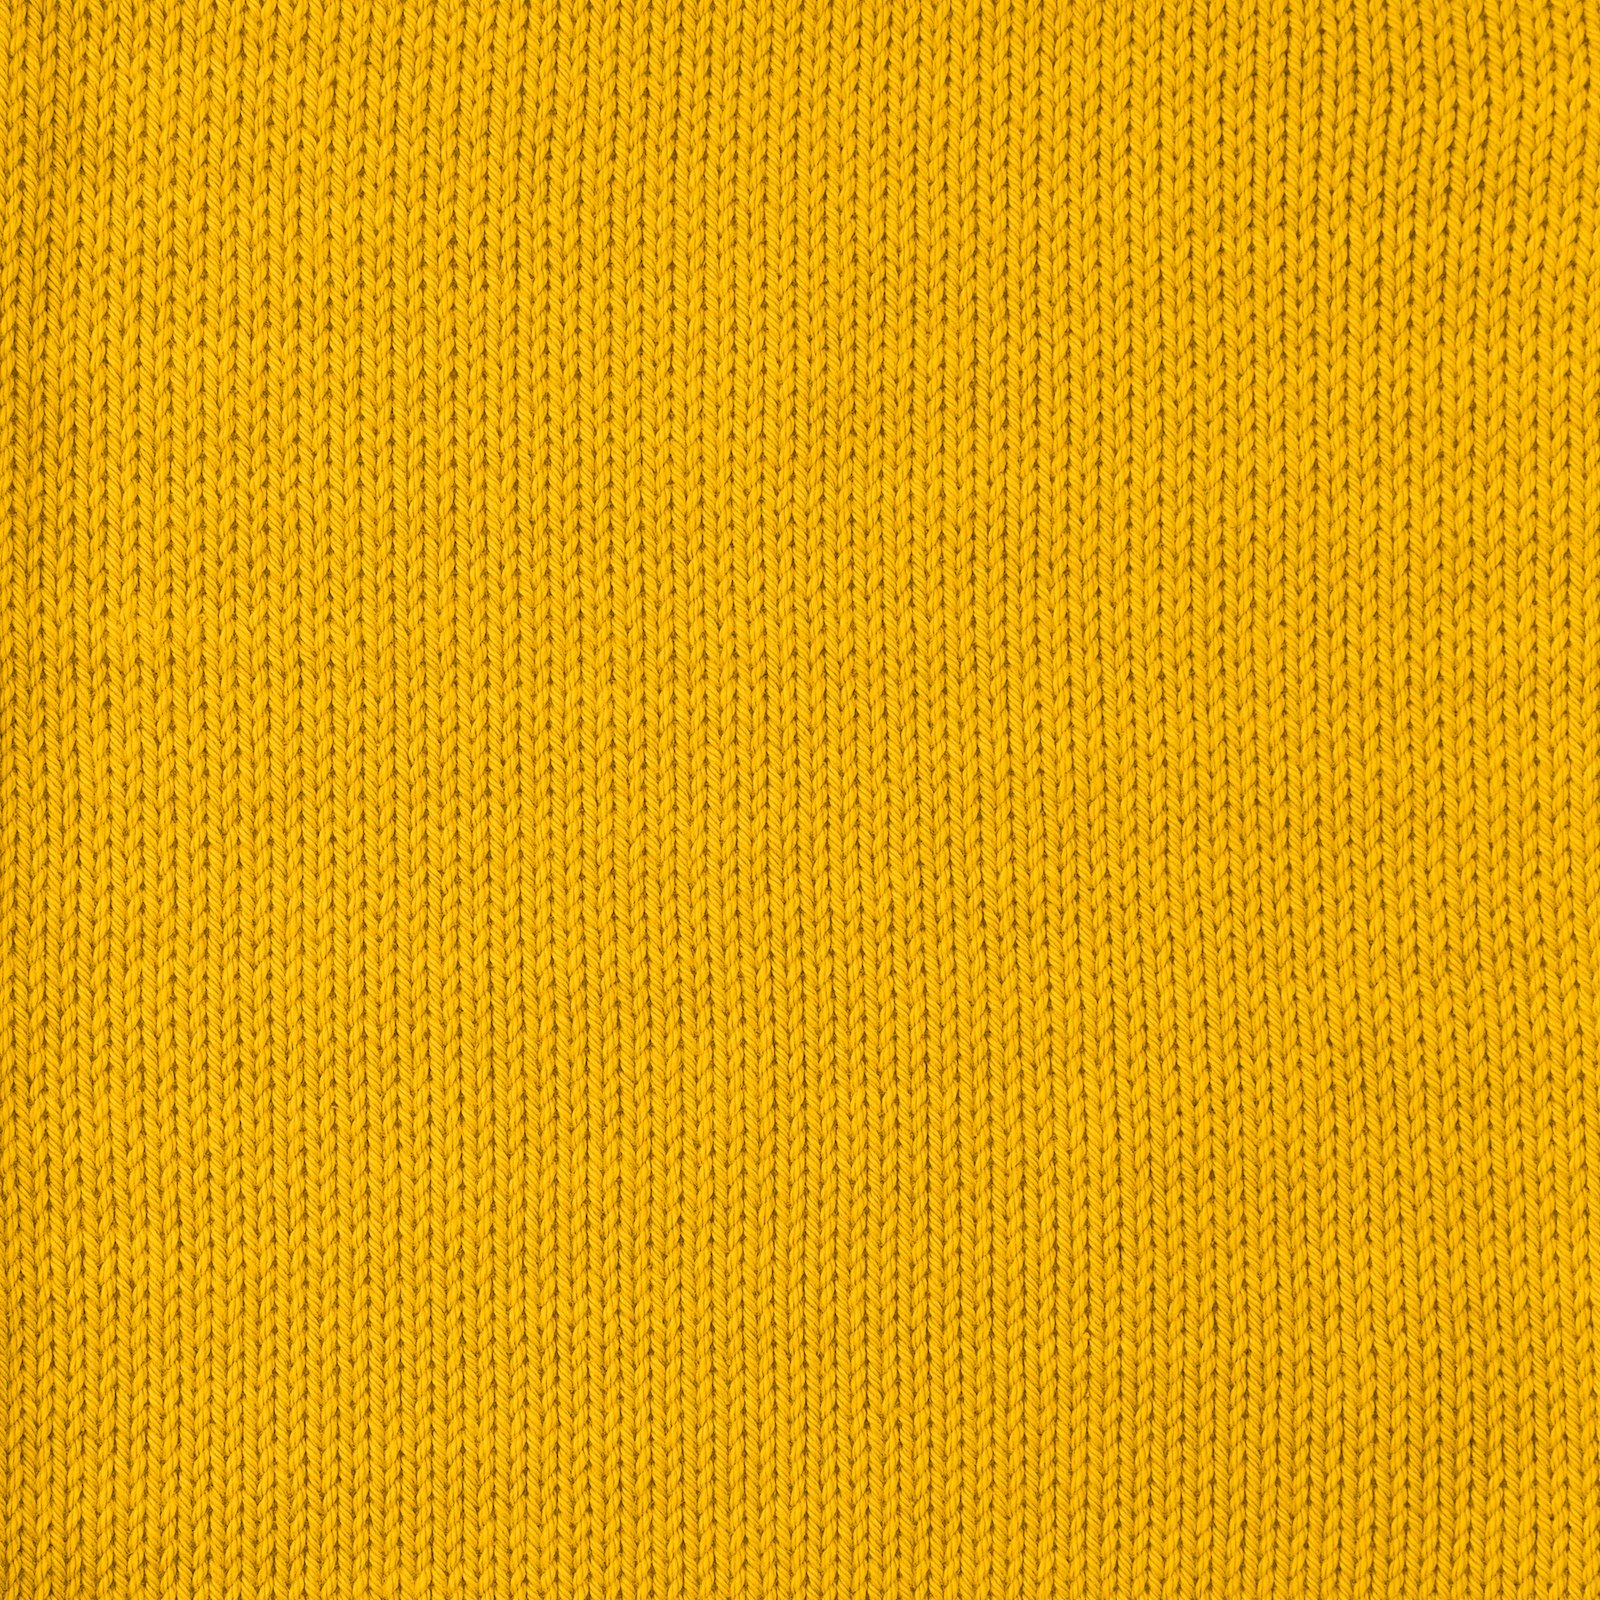 FRAYA, 100% cotton 8/4  yarn  "Colourful", curry 90060035_sskit